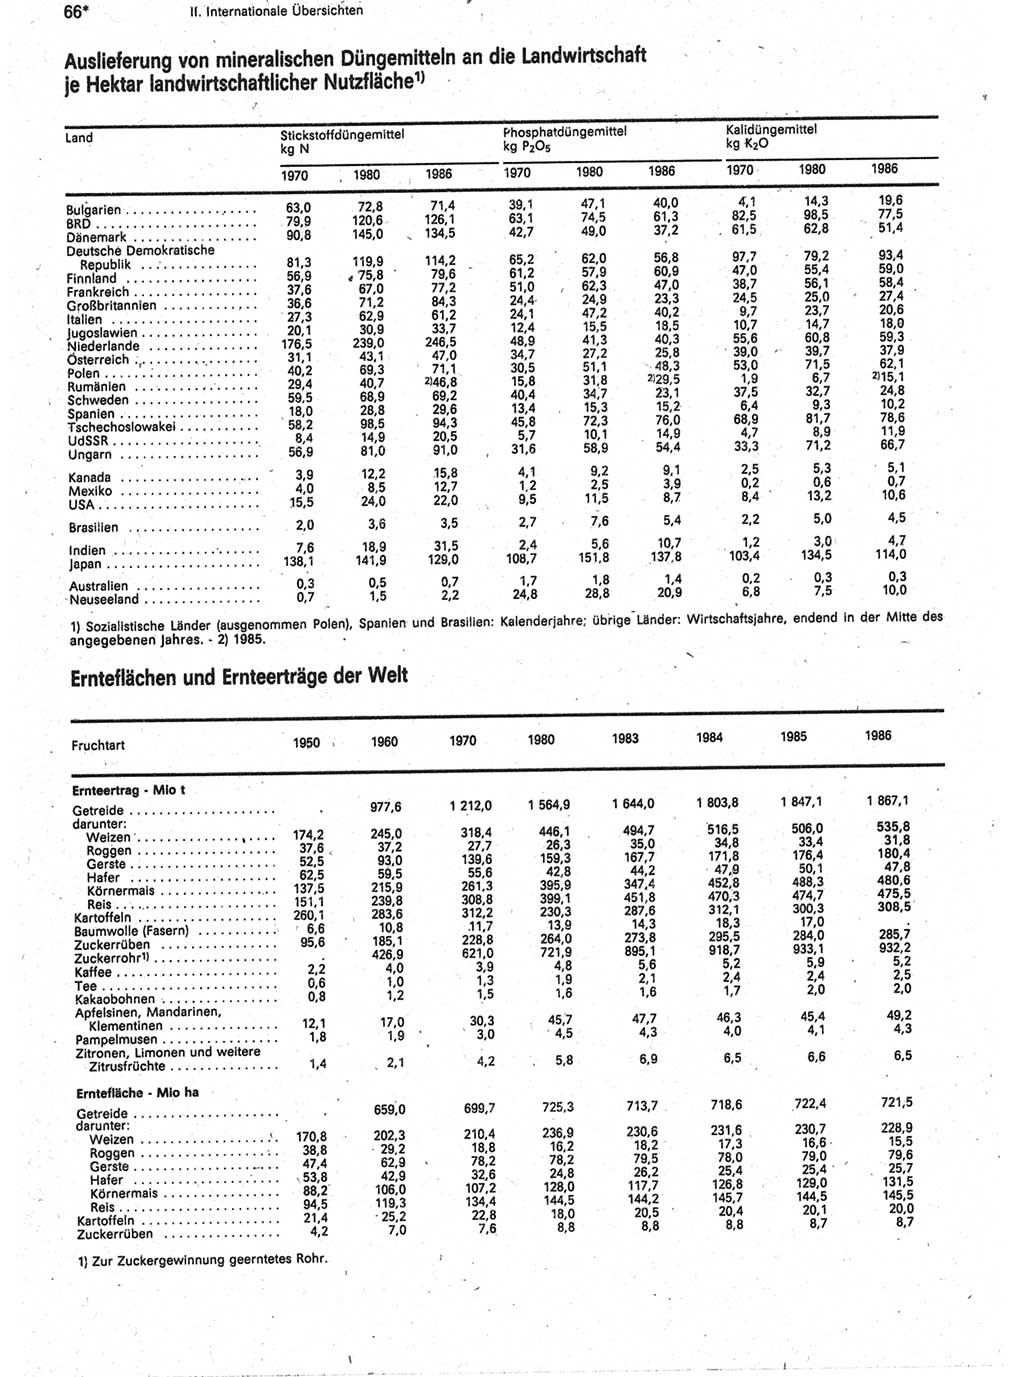 Statistisches Jahrbuch der Deutschen Demokratischen Republik (DDR) 1988, Seite 66 (Stat. Jb. DDR 1988, S. 66)